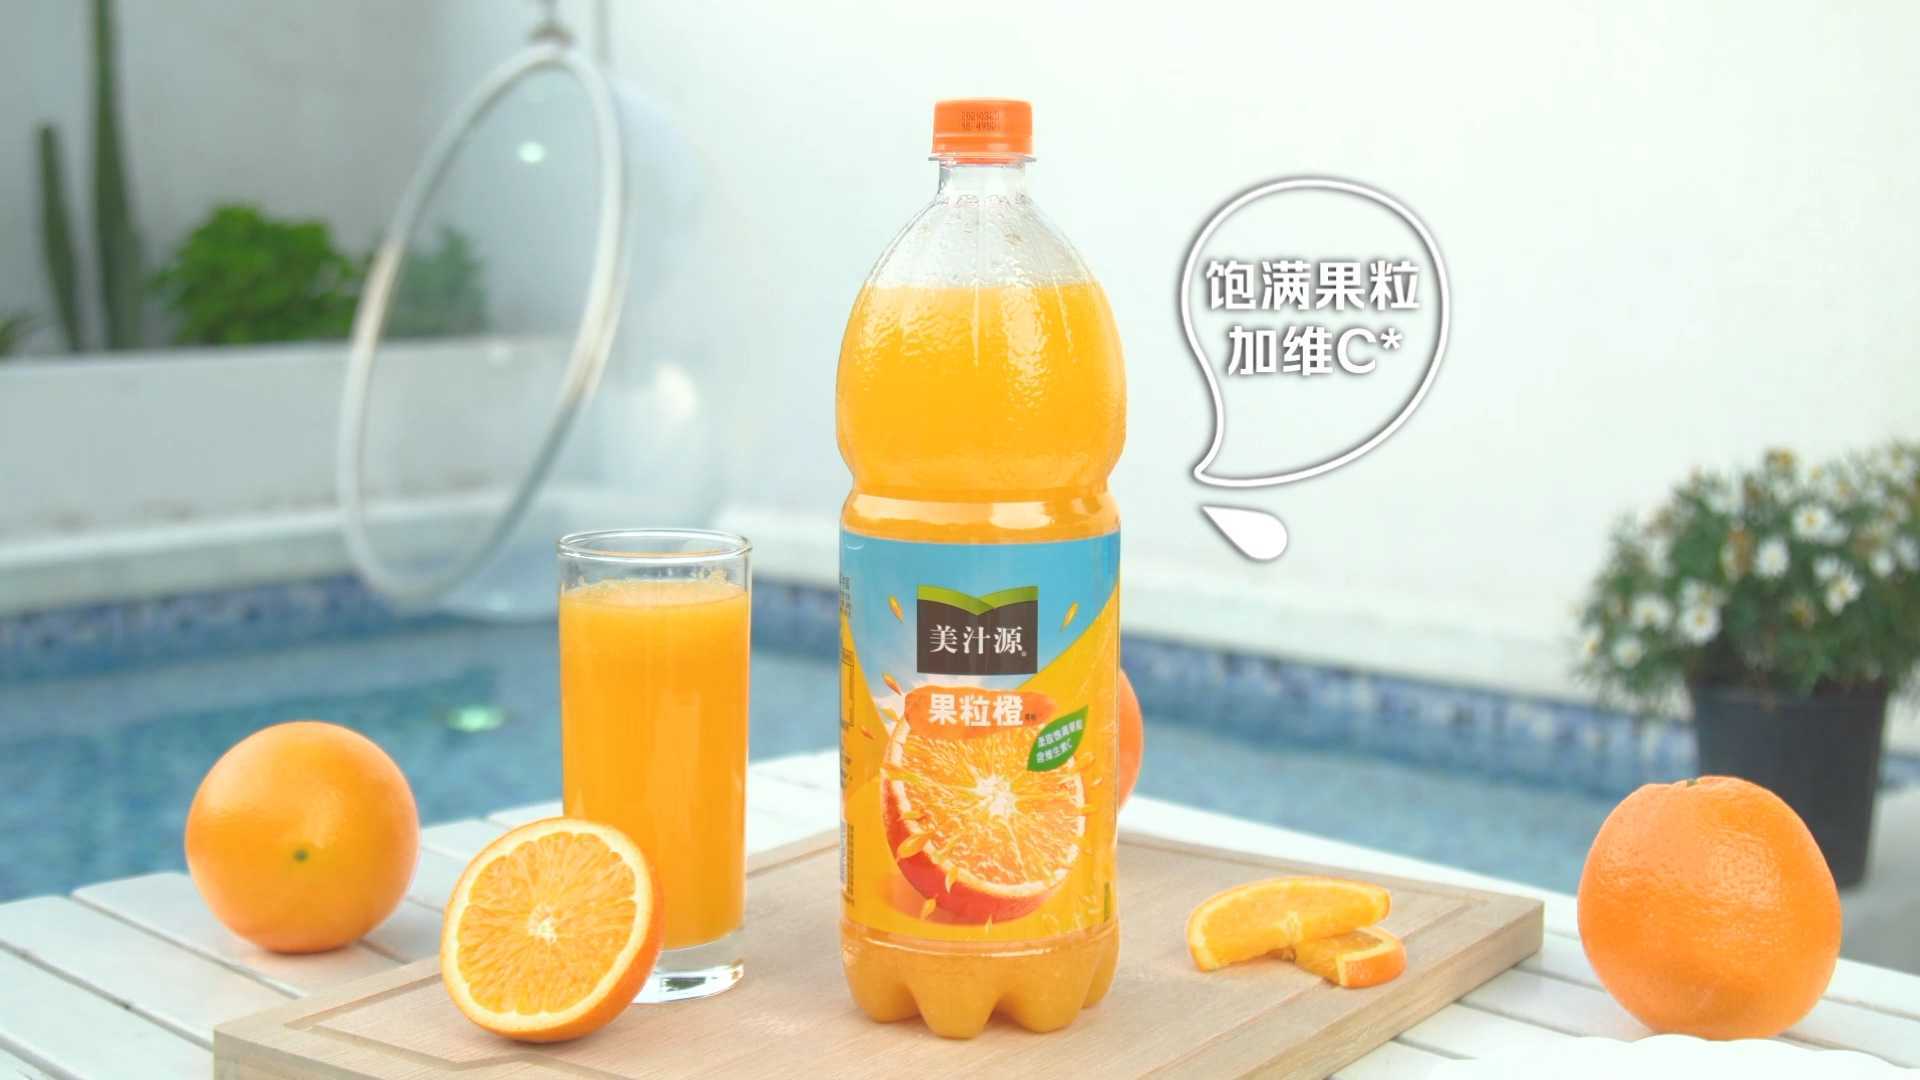 美汁源果粒橙橙汁广告